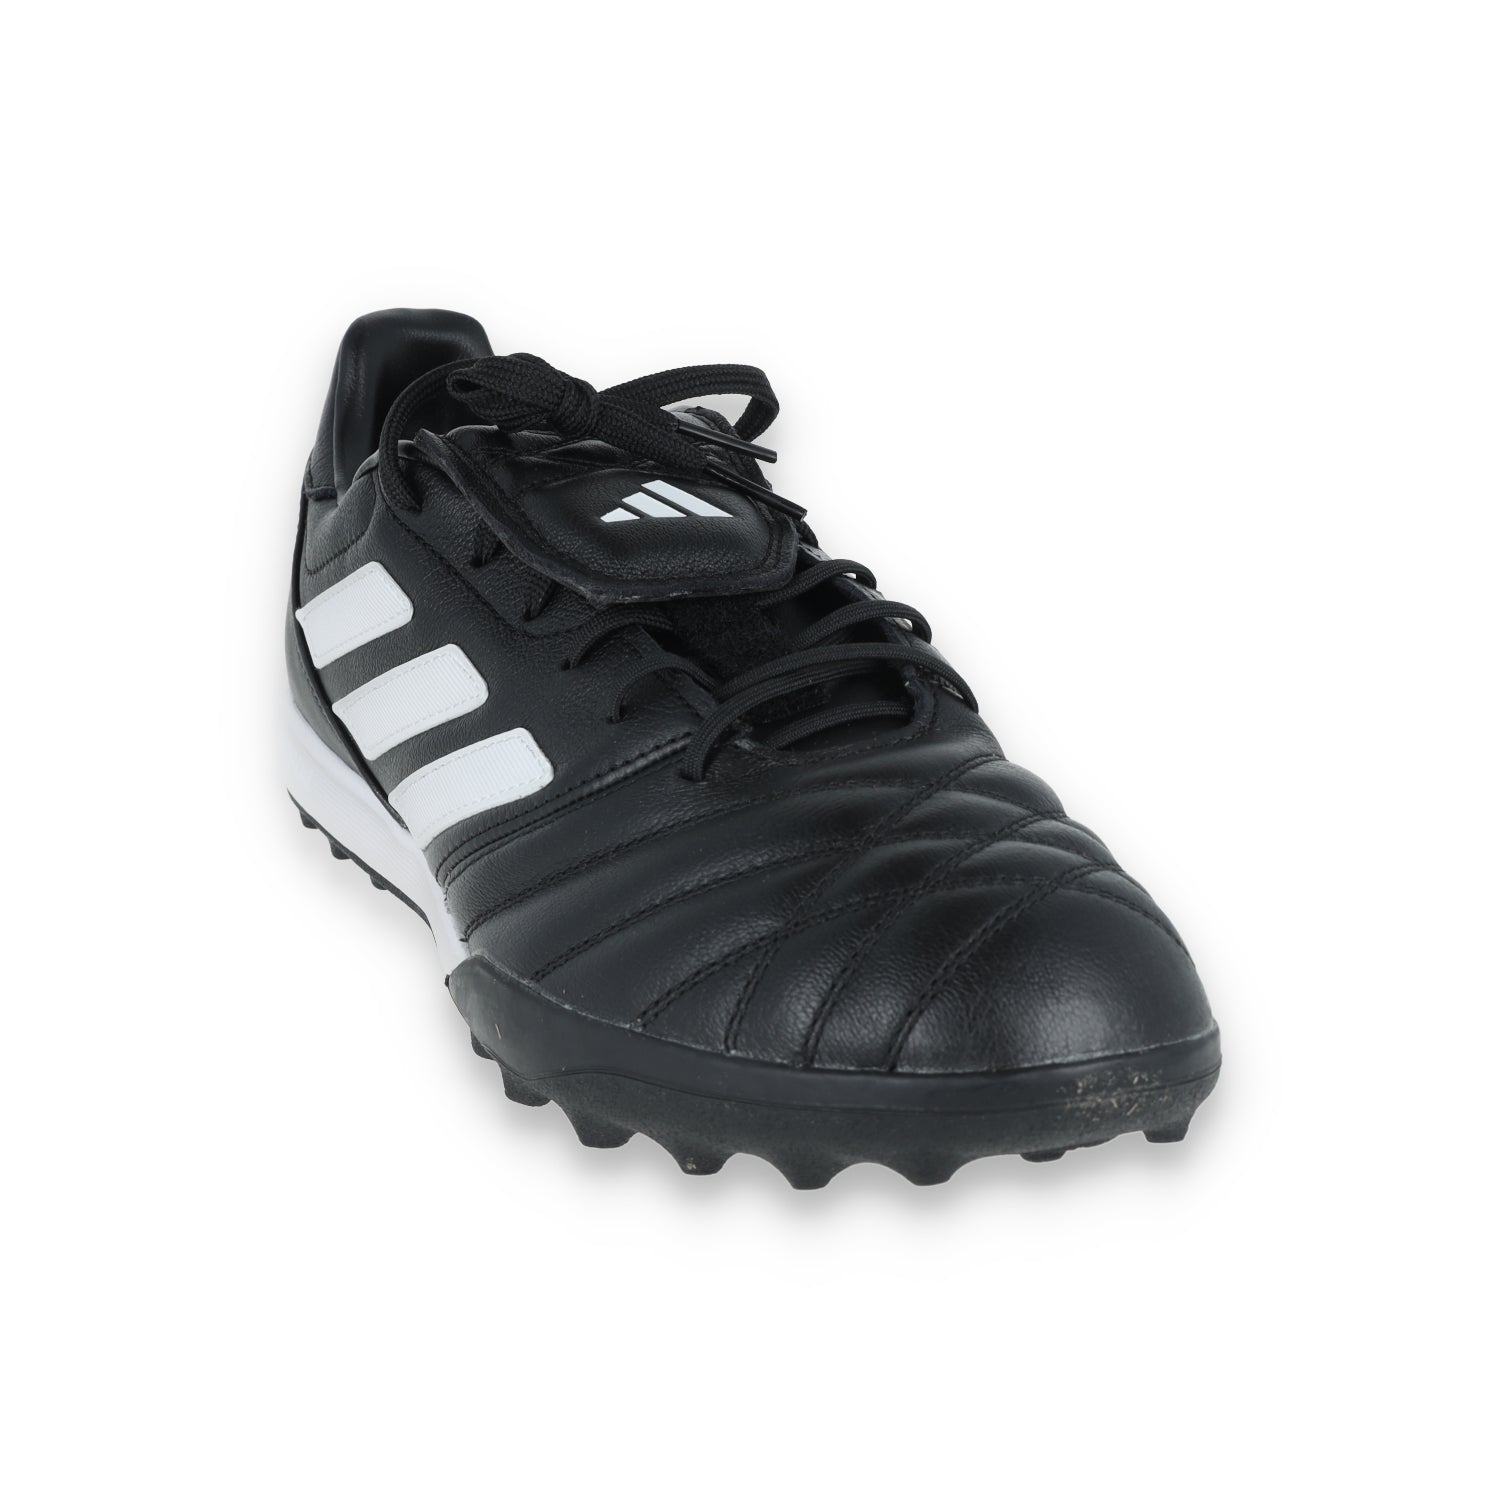 Adidas Copa Gloro TF-Black/White